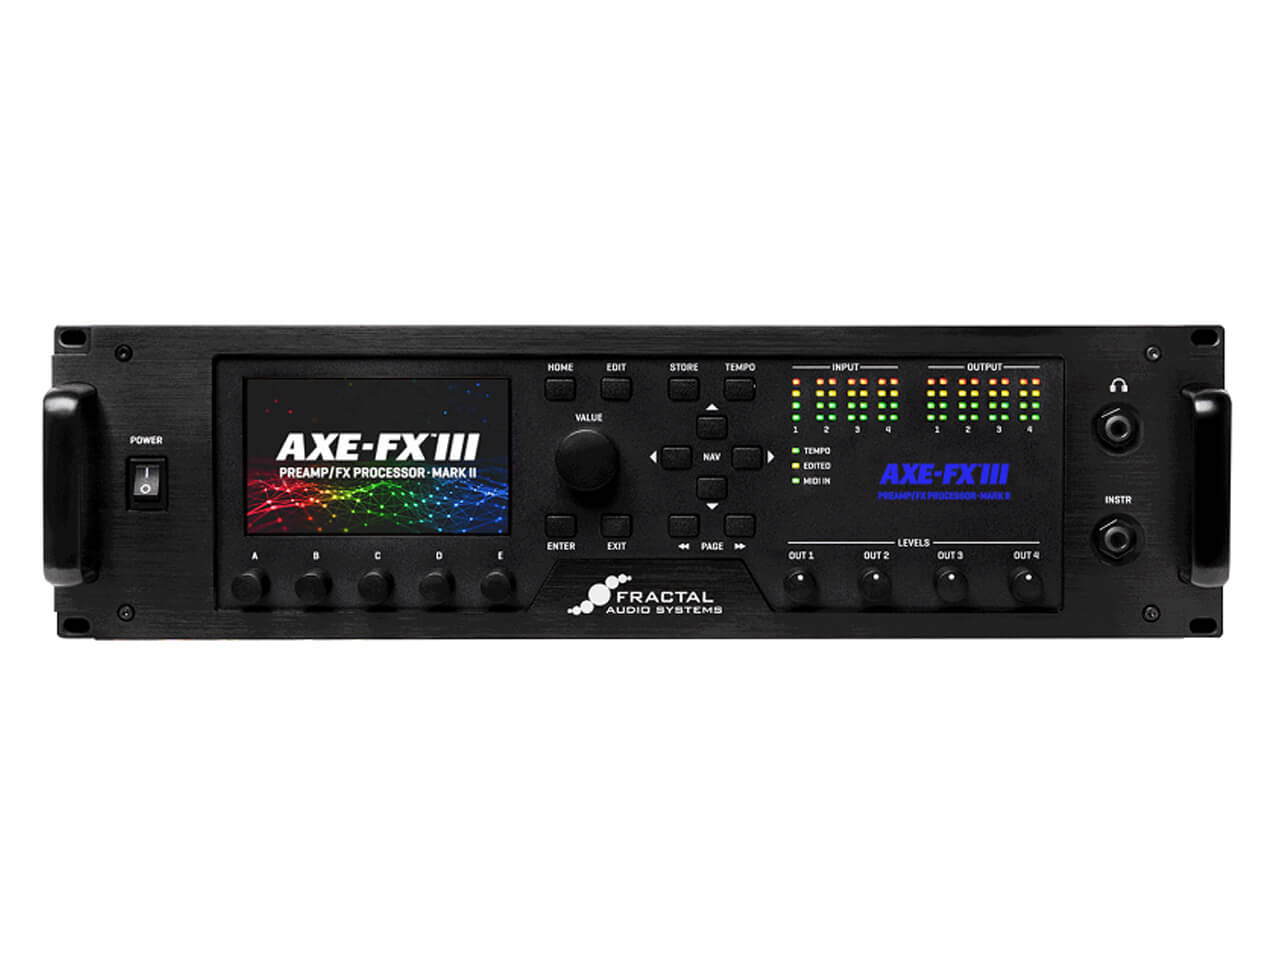 FRACTAL AUDIO SYSTEMS(フラクタルオーディオシステムズ) Axe-Fx III MARK II (プリアンプ/アンプシミュレーター)